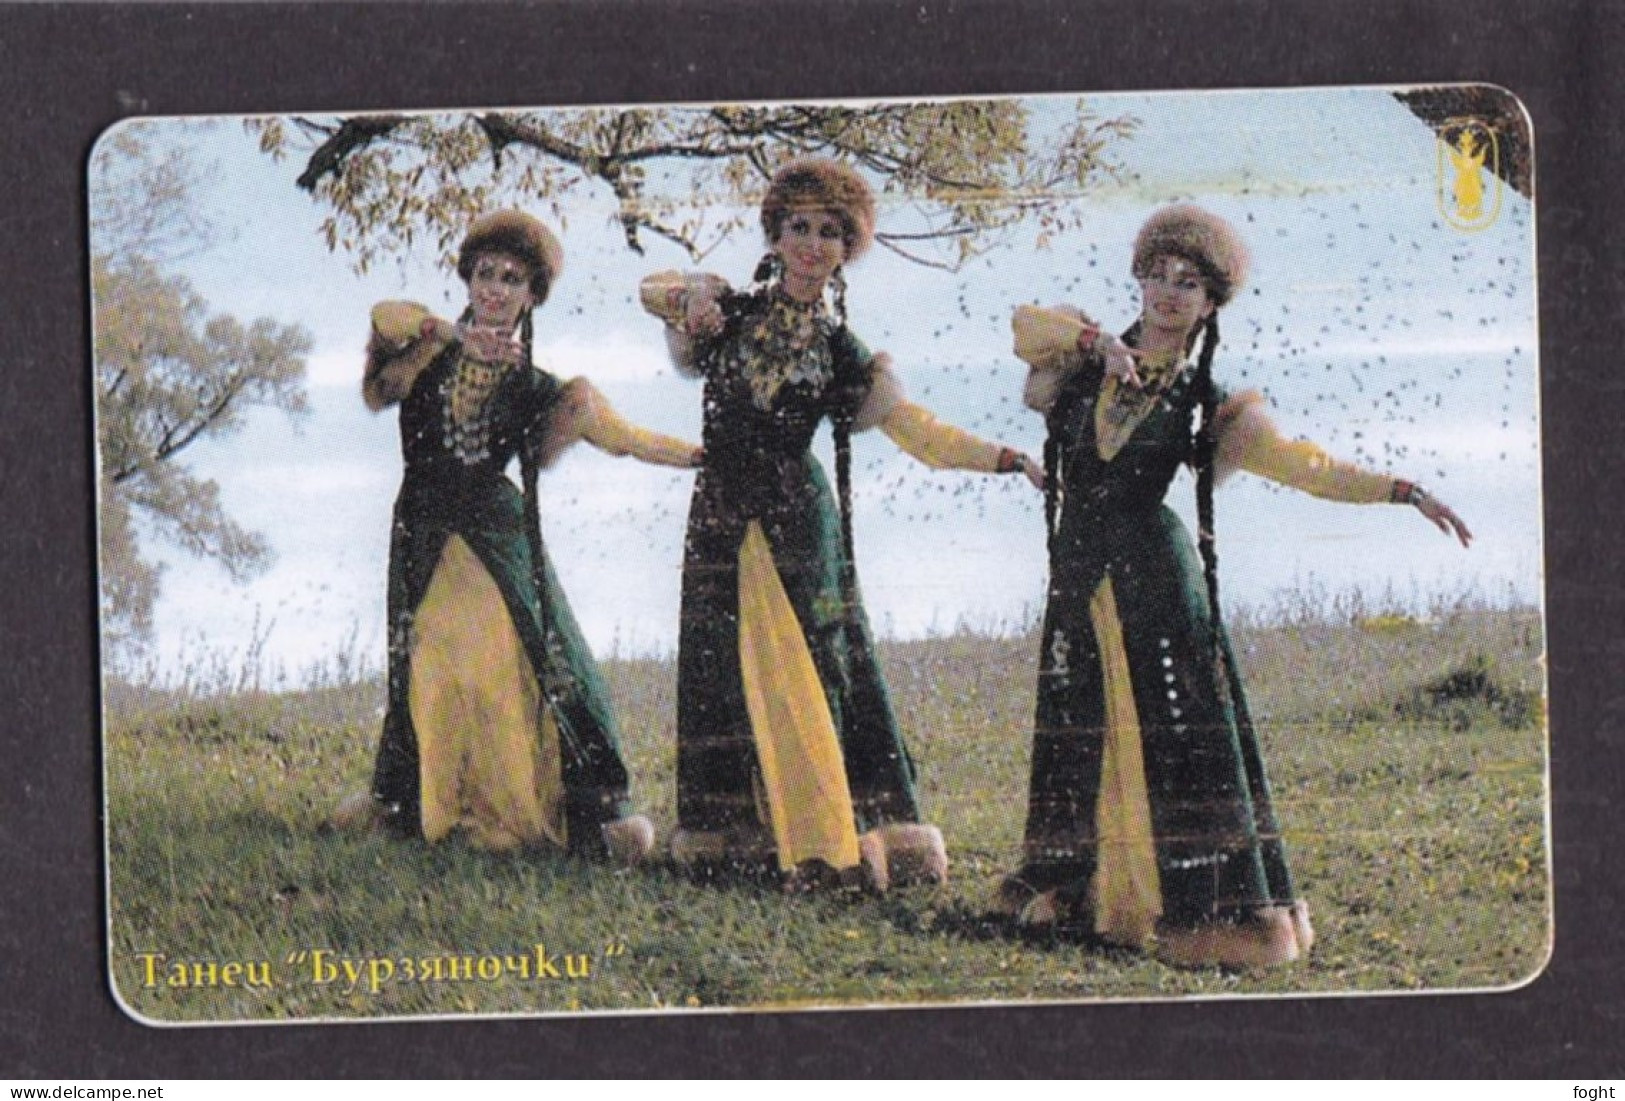 2002 Russia Bashinformsvyaz-Ufa,Dance "Byrzyanochki",90 Units Card,Col:RU-BIS-V-008A - Russia